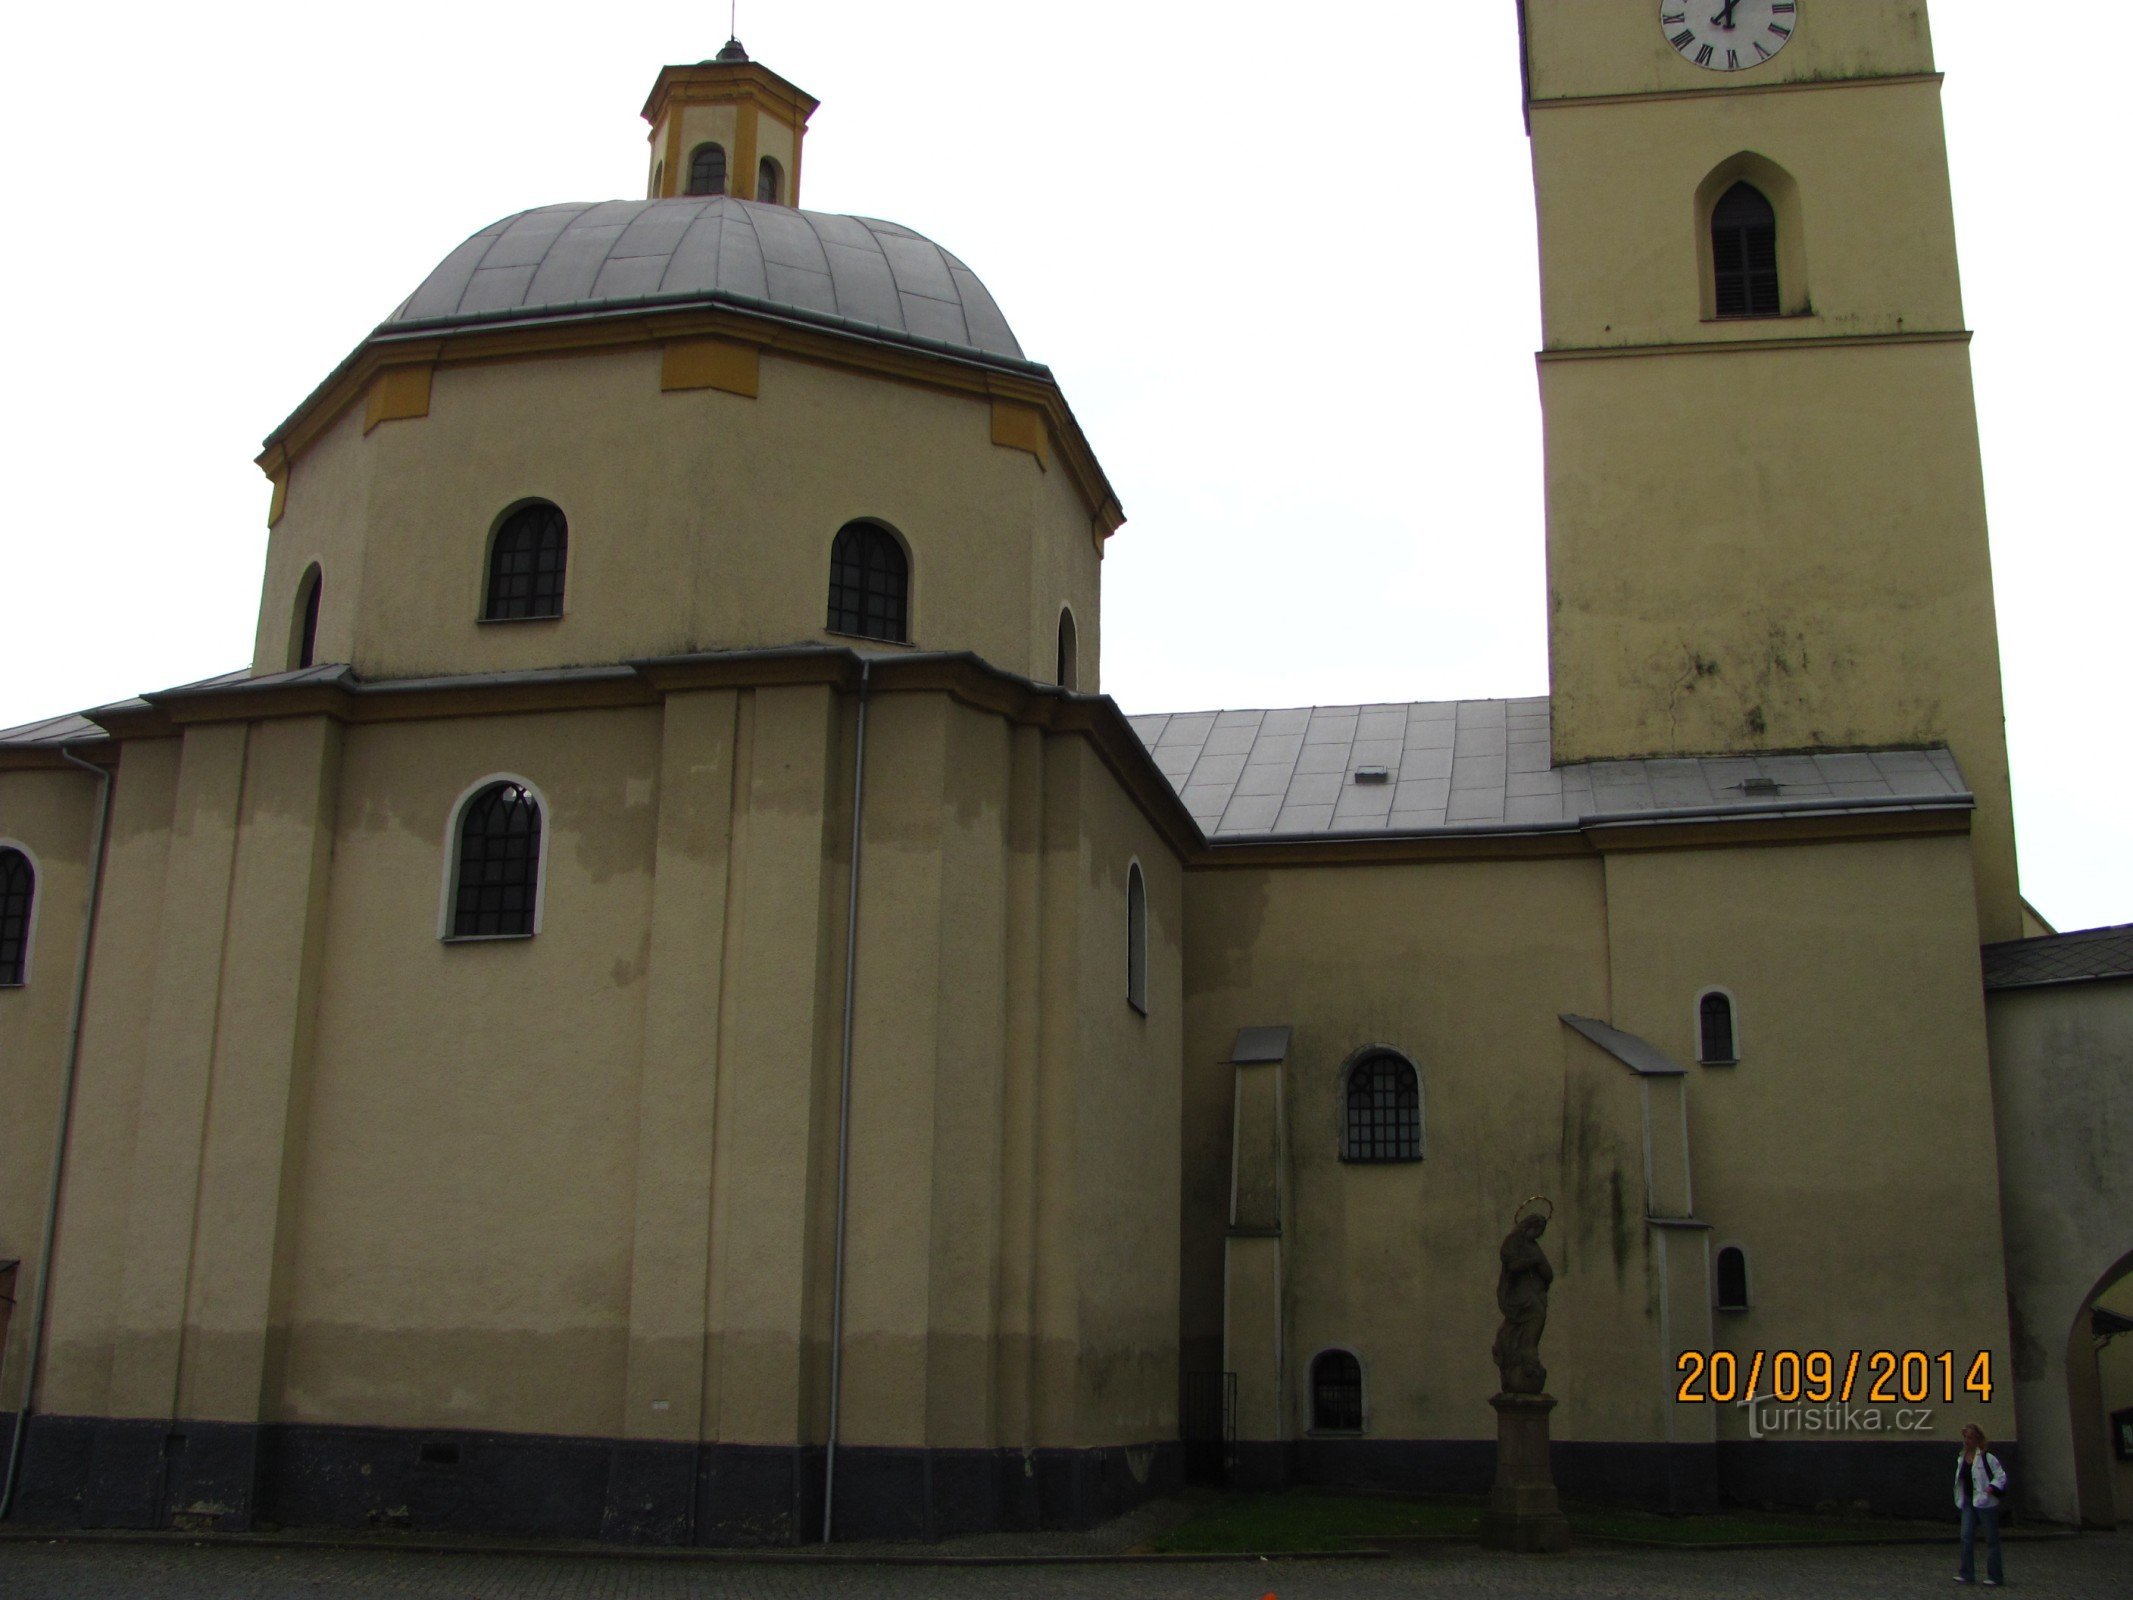 Nhà thờ St. Kateřiny ở Klimkovice